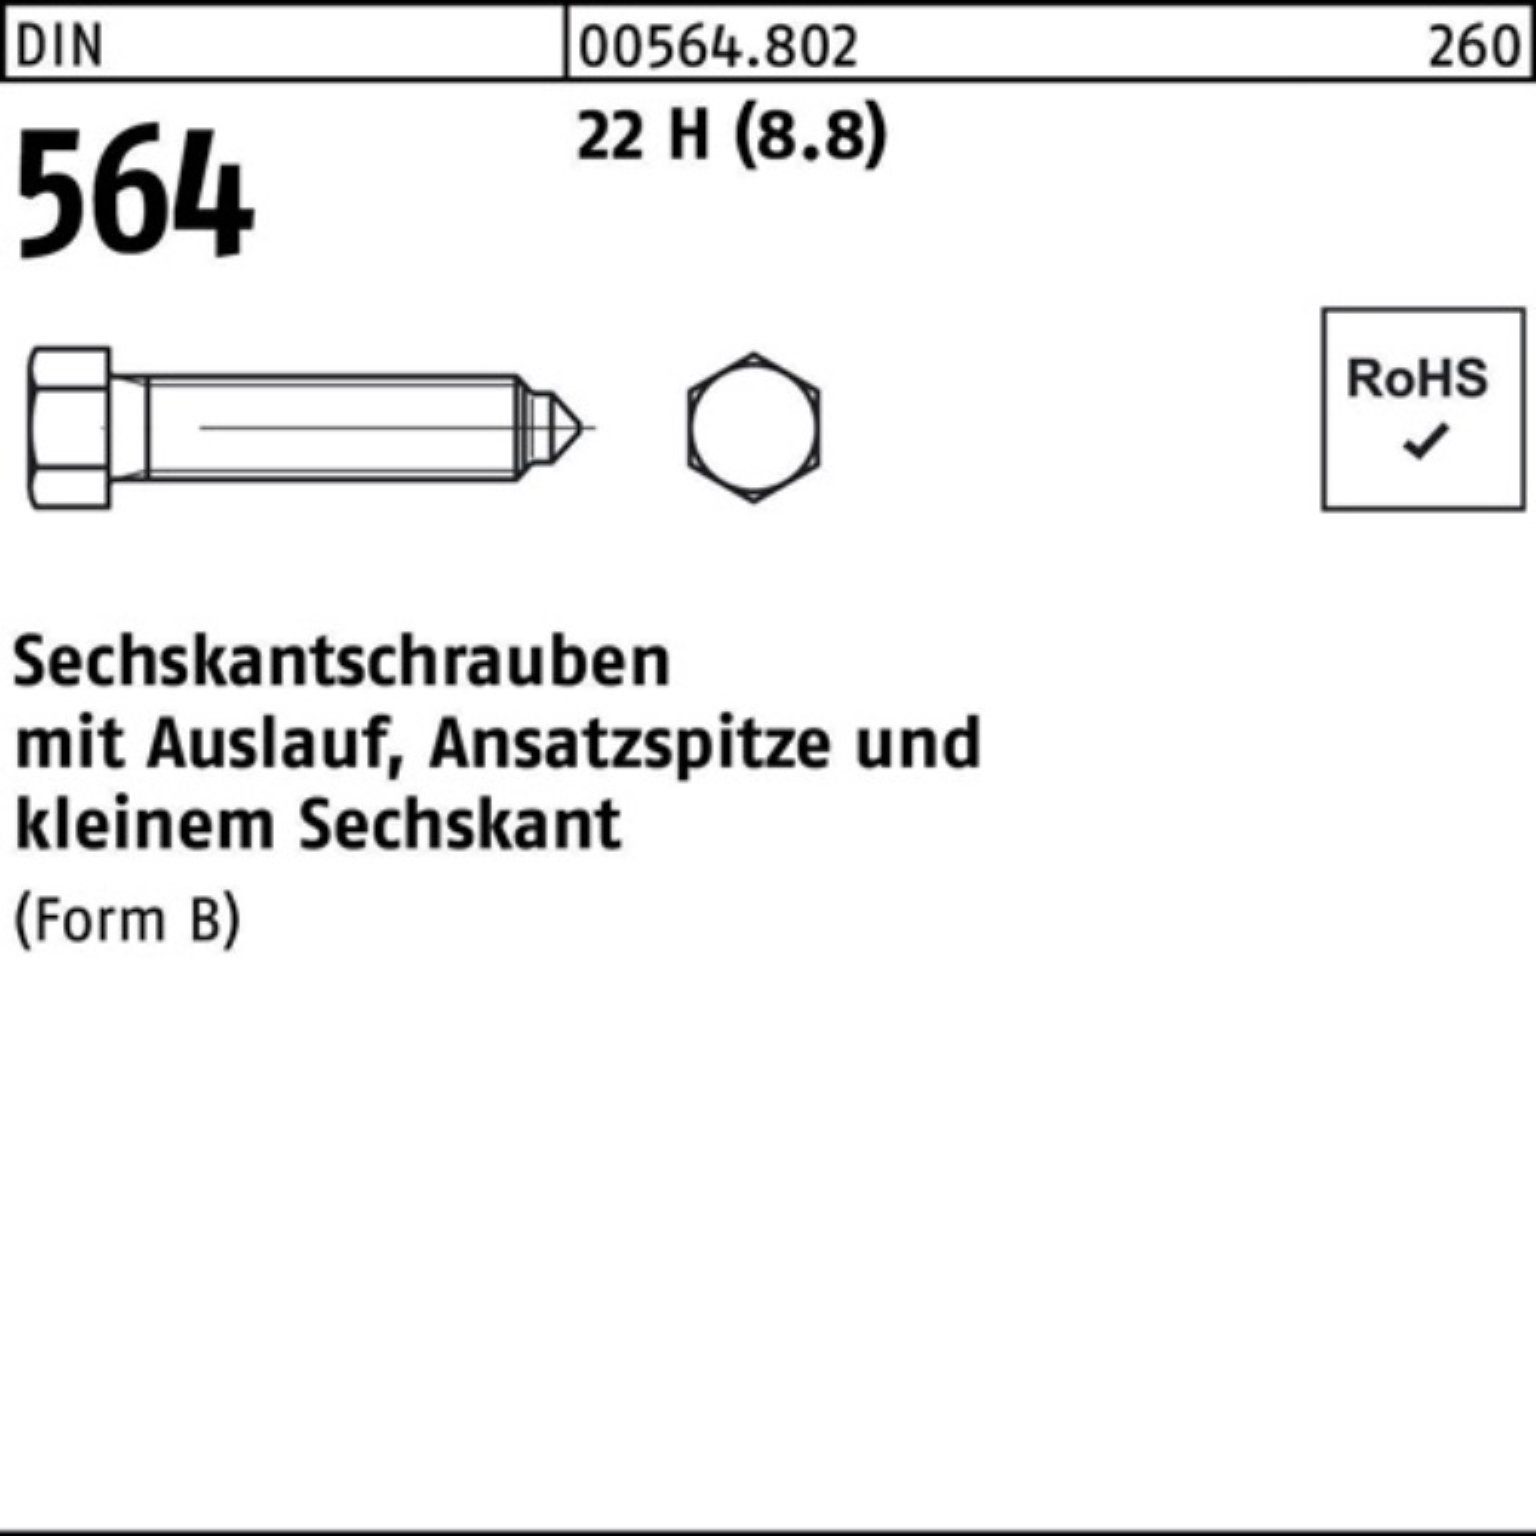 Reyher Sechskantschraube 100er Pack Sechskantschraube DIN 564 Ansatzspitze/Auslauf BM 16x 80 22